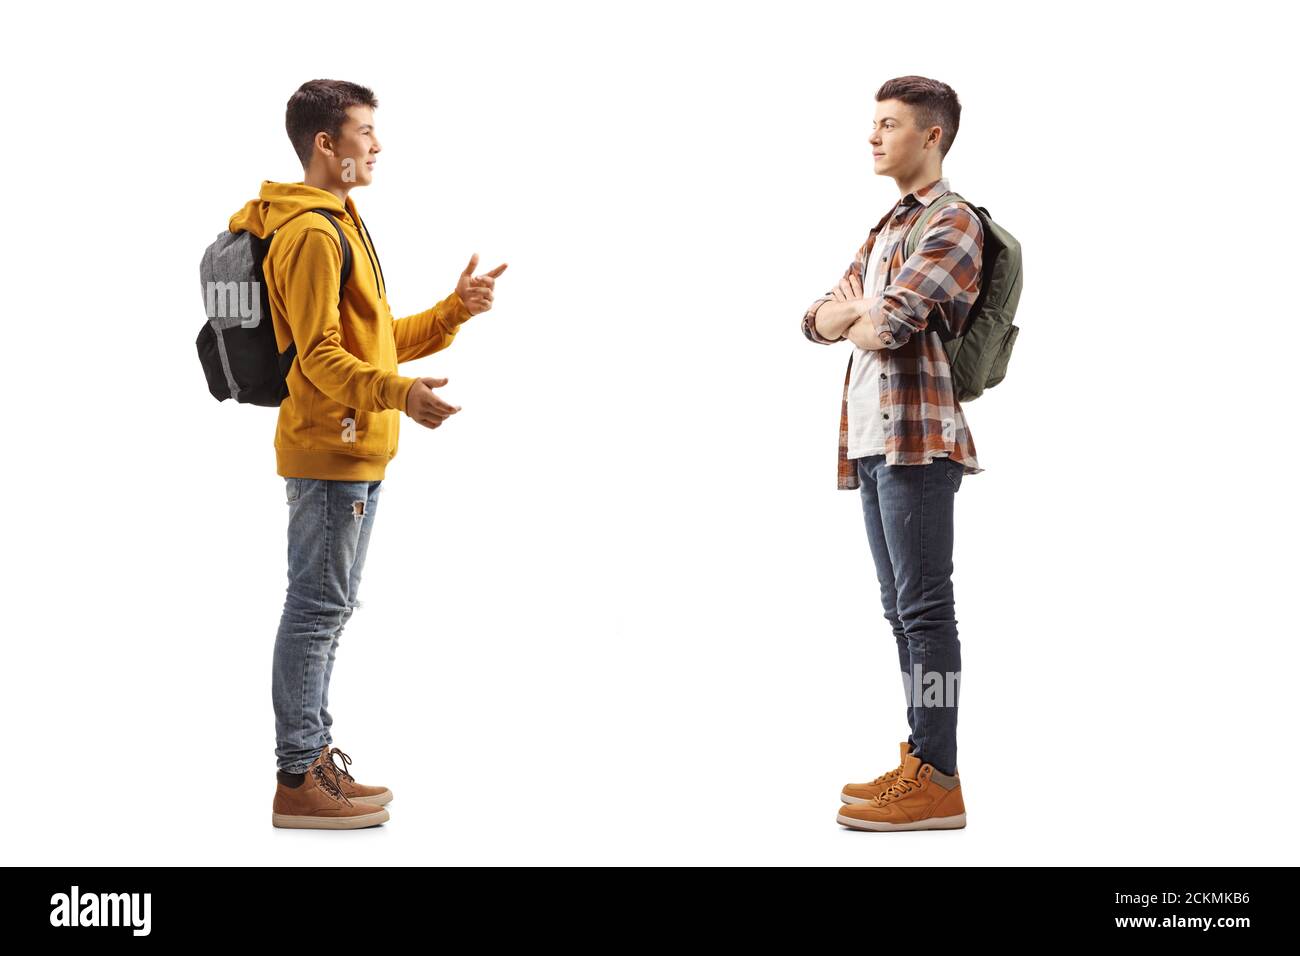 Foto di profilo a lunghezza intera di due ragazzi adolescenti che hanno una conversazione isolata su sfondo bianco Foto Stock